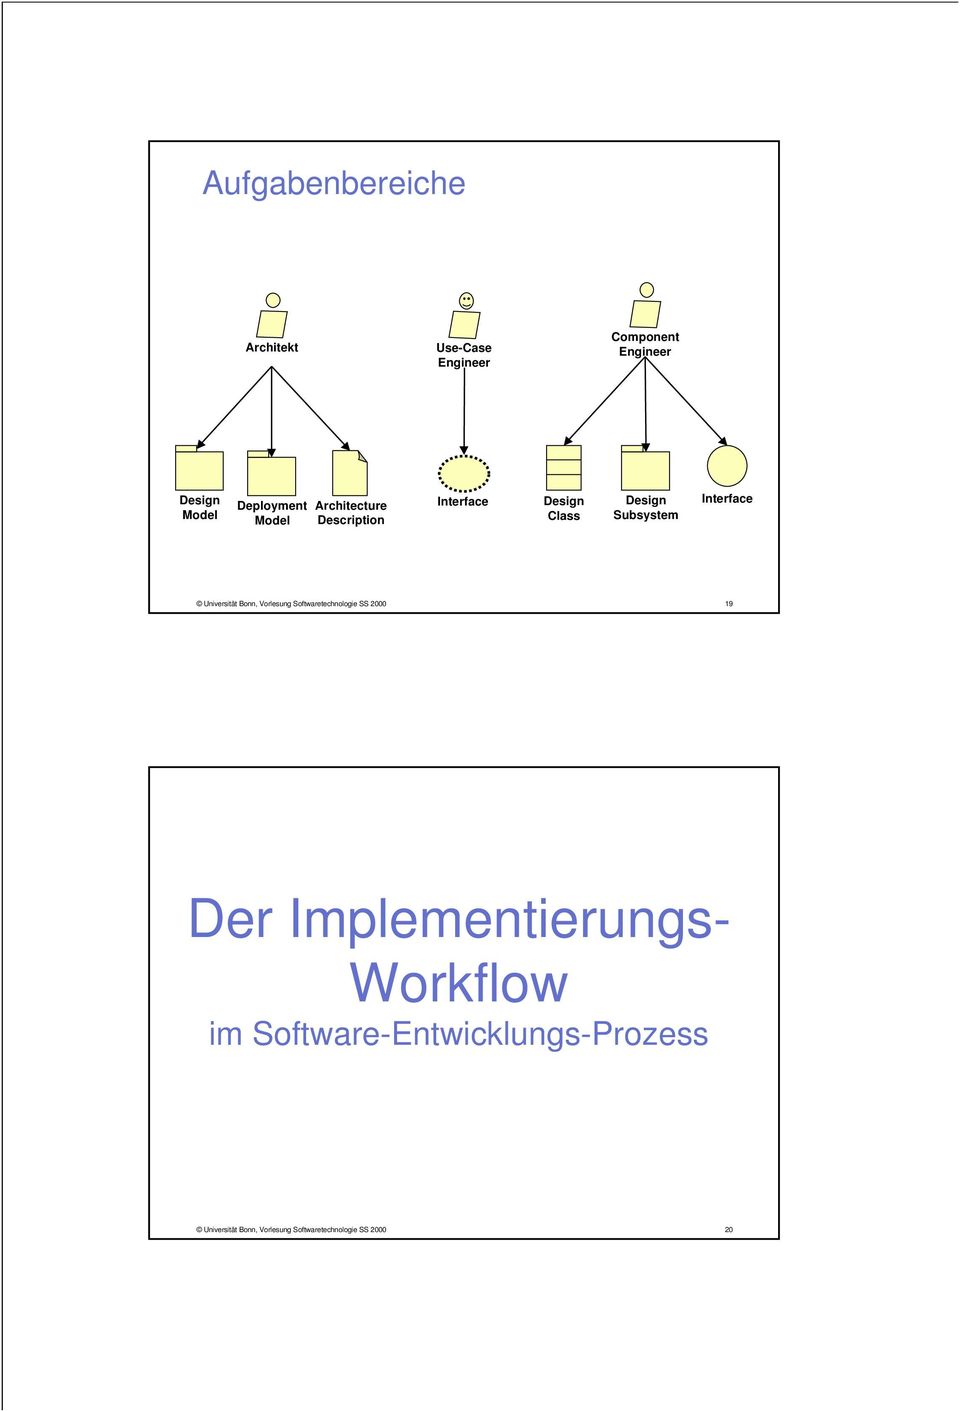 Bonn, Vorlesung Softwaretechnologie SS 2000 19 Der Implementierungs-